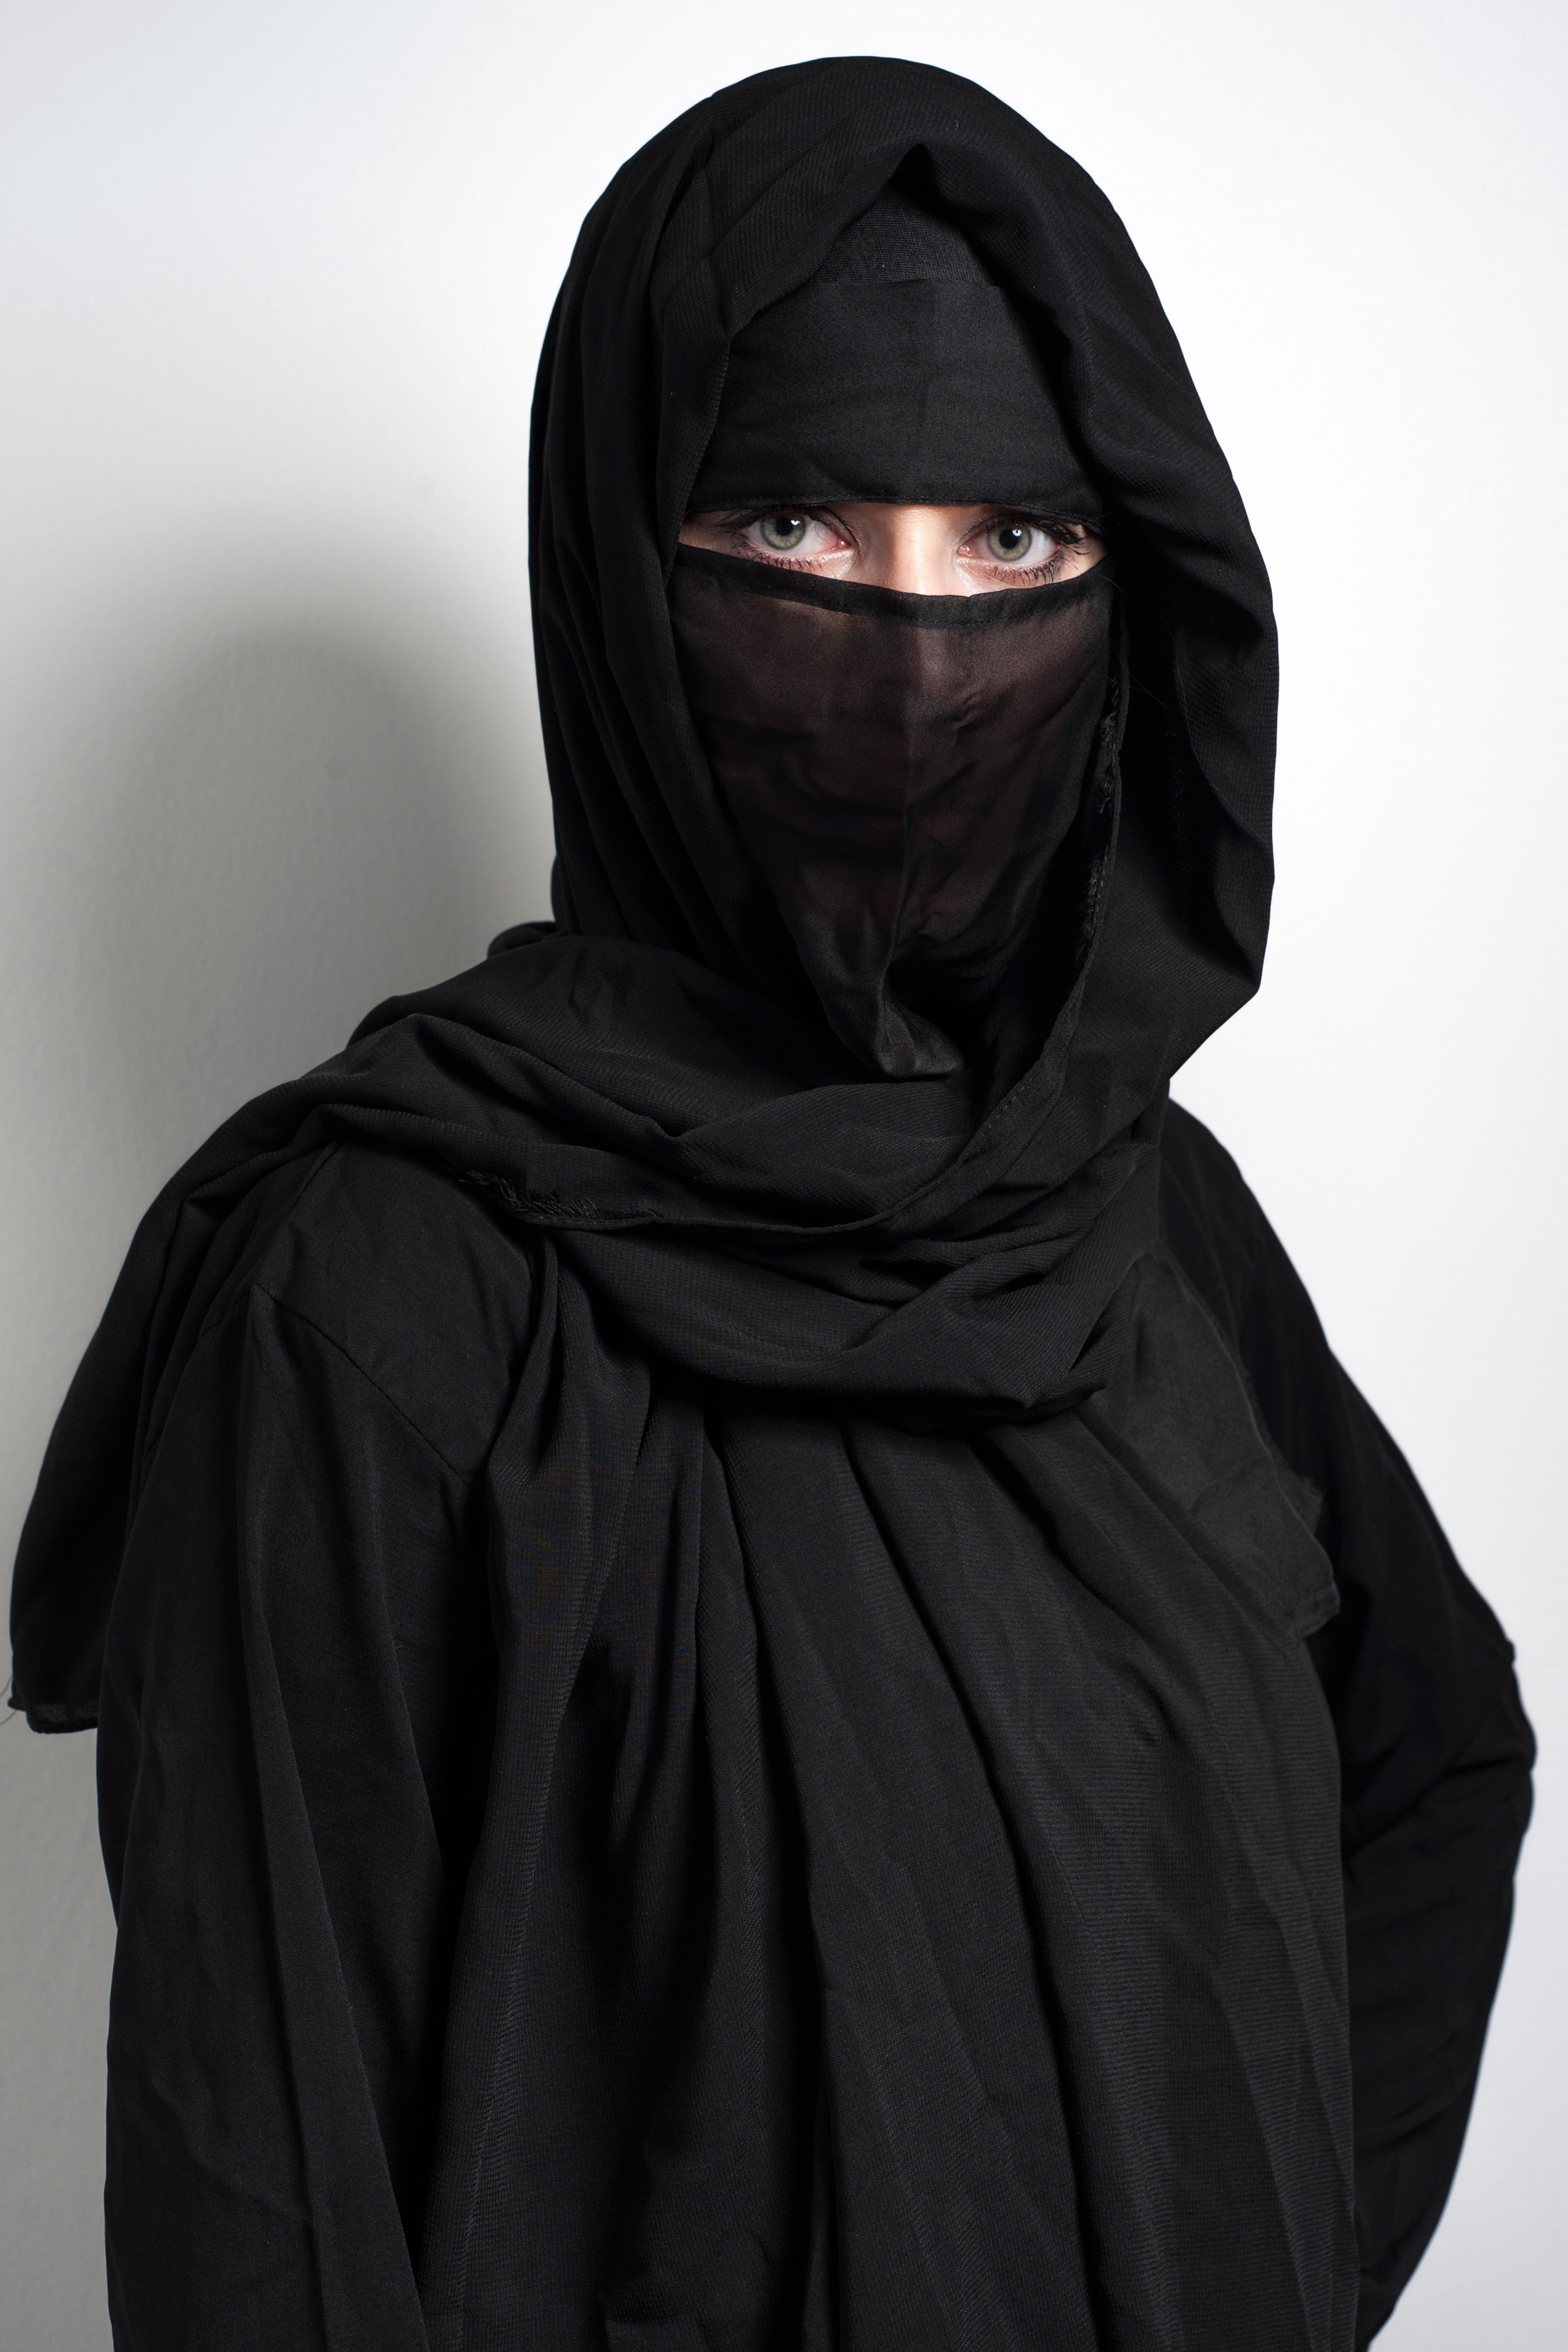 Muslim in Burka